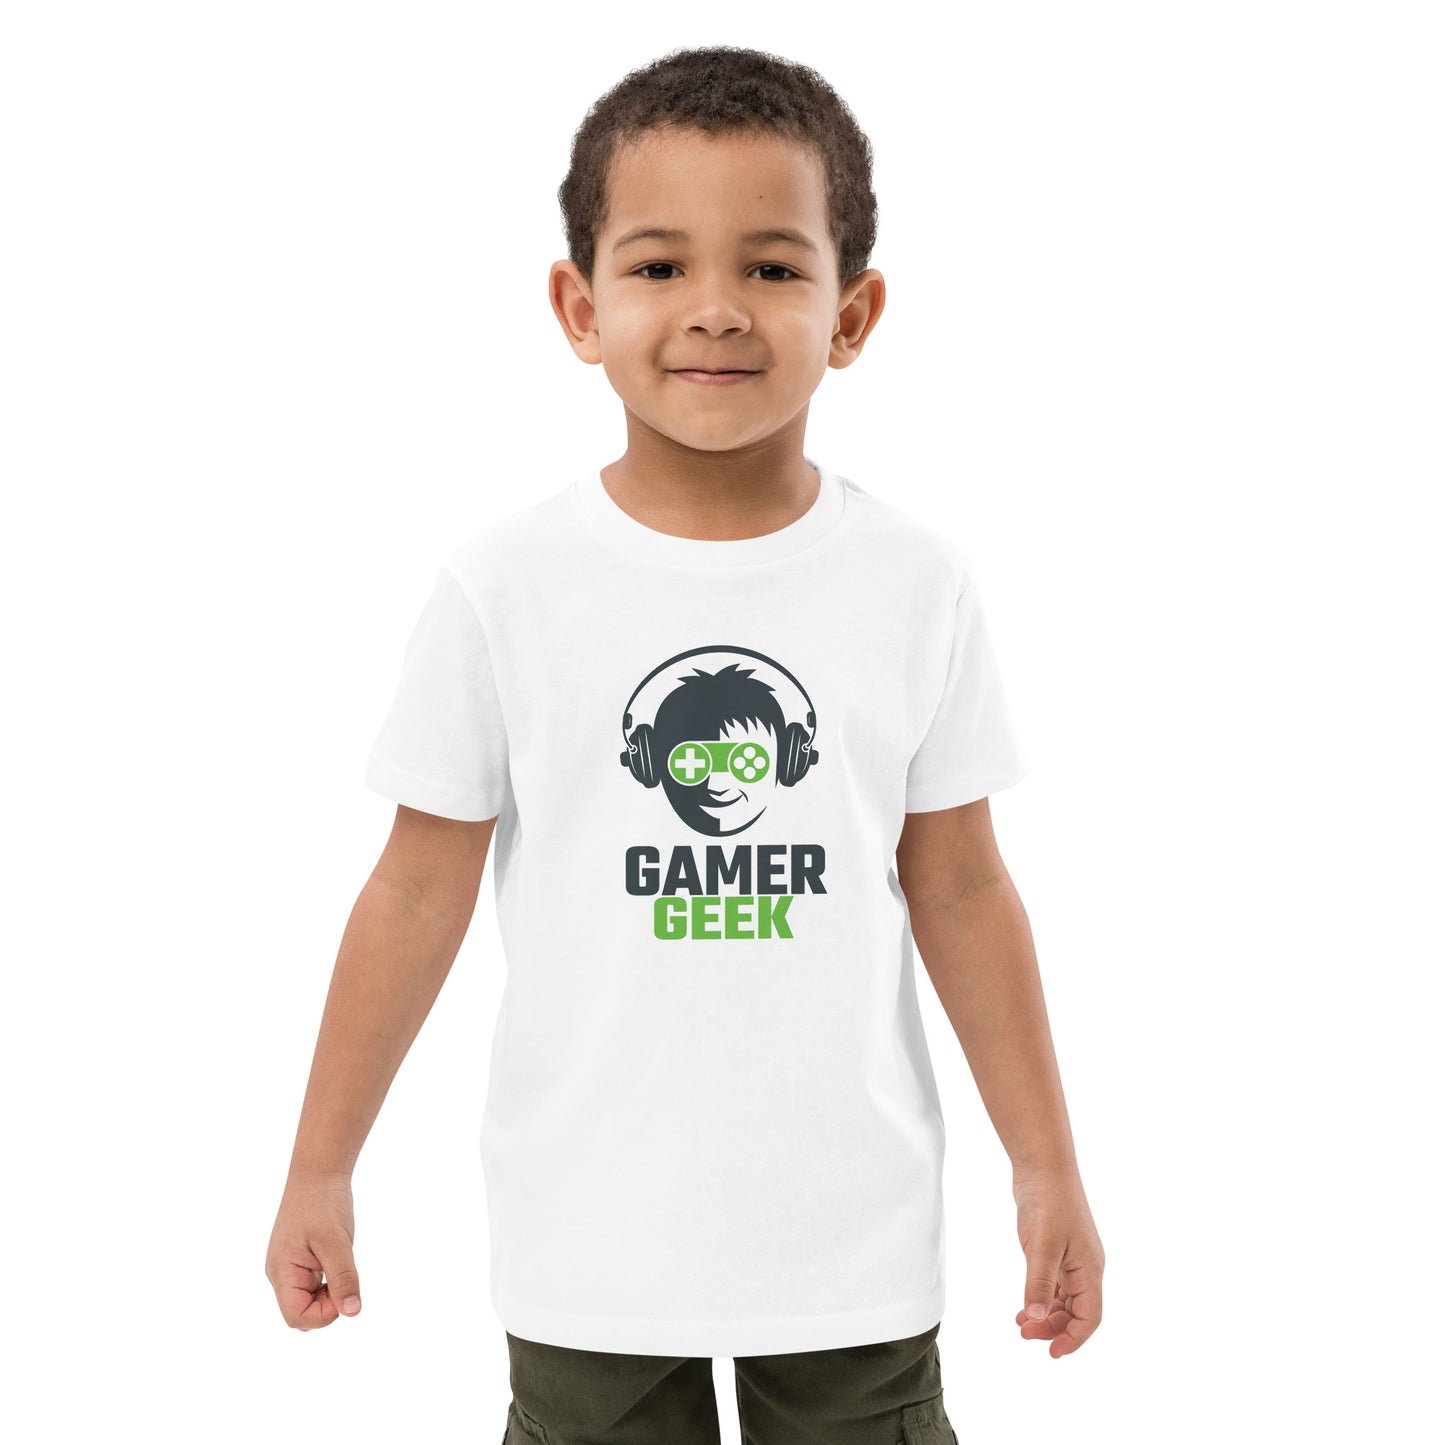 Gamer Geek - Organic cotton kids t-shirt - HobbyMeFree